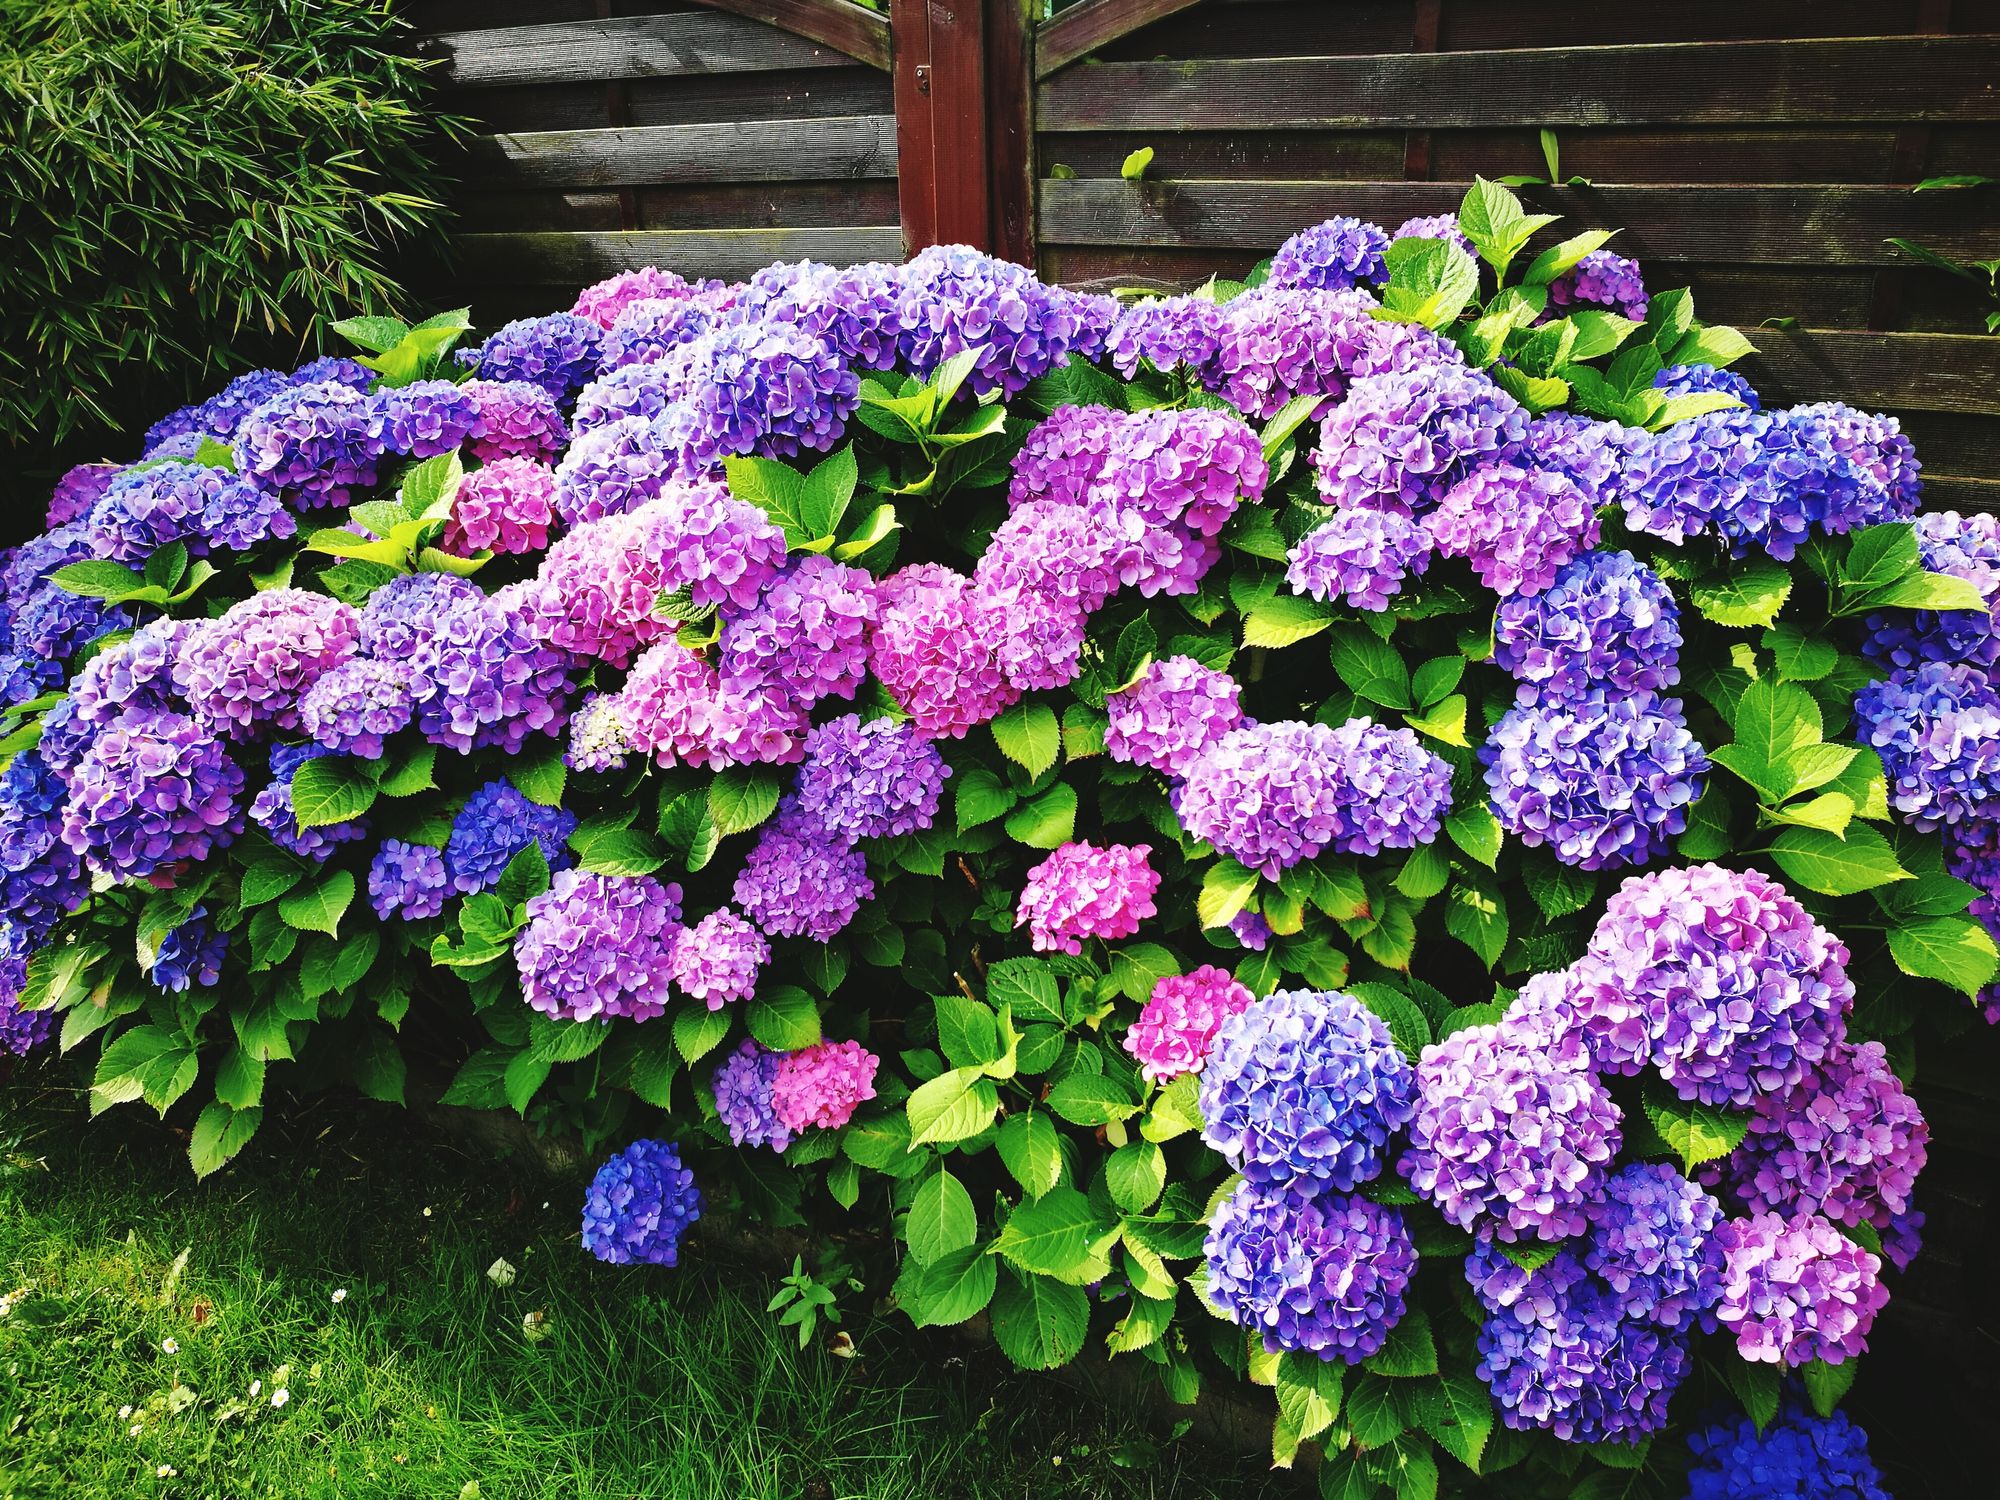 Image of Hydrangea purple flower bush